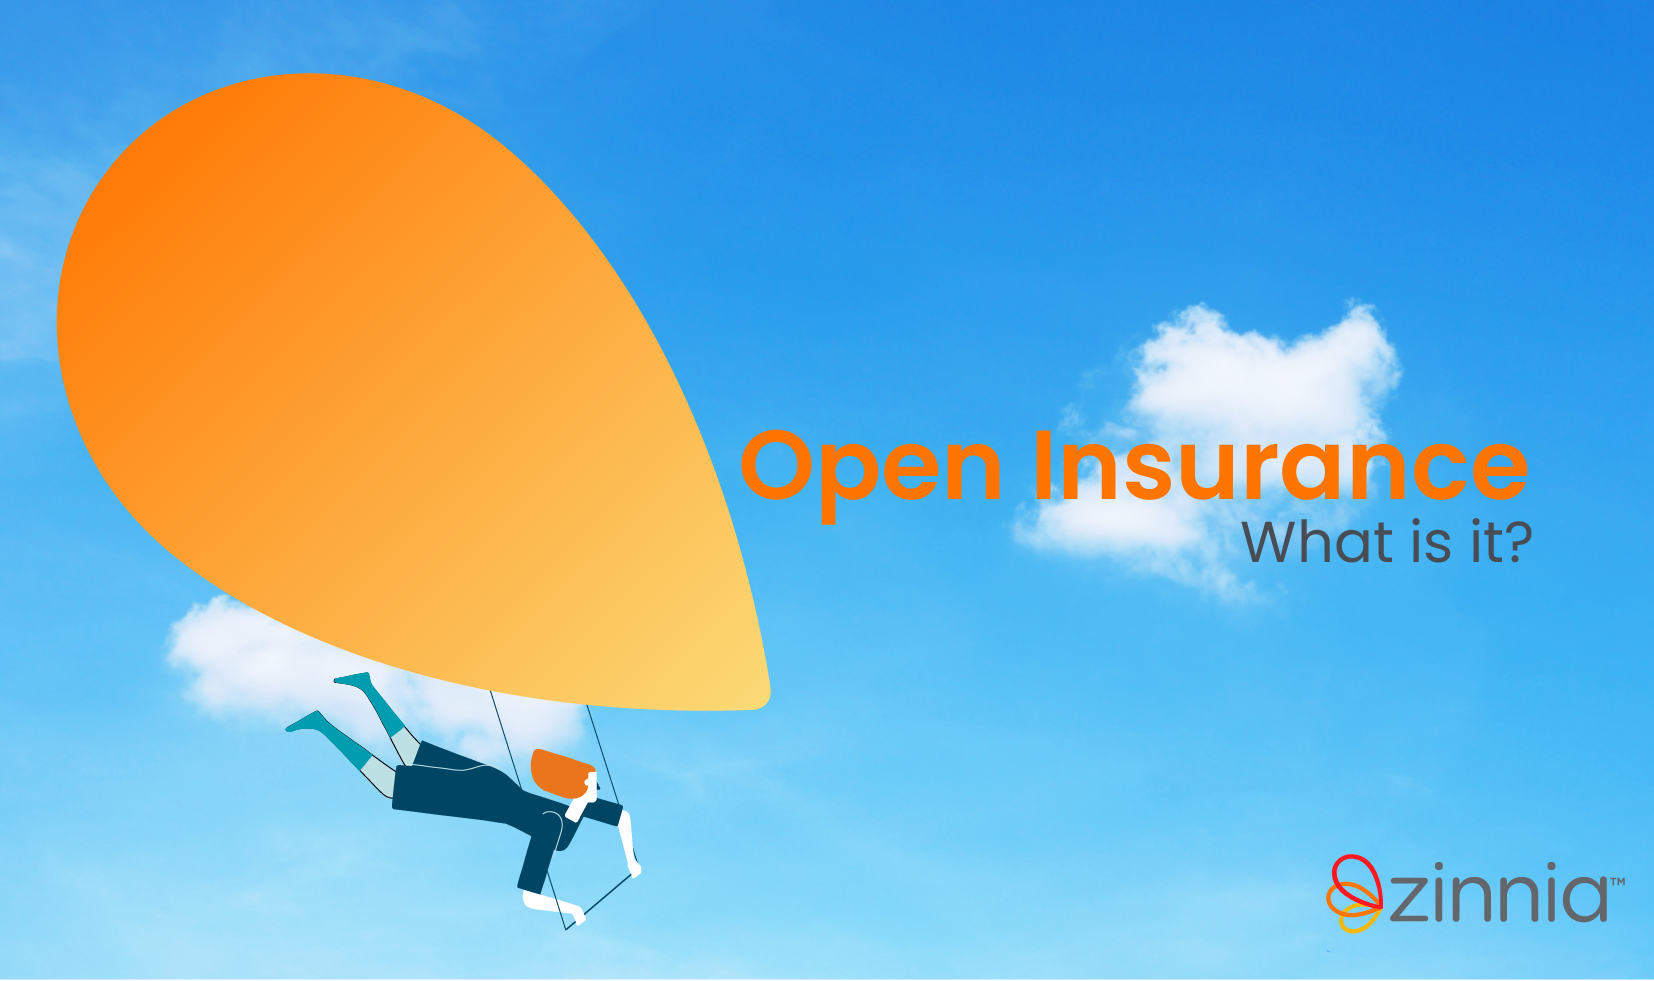 Open Insurance: What is it?